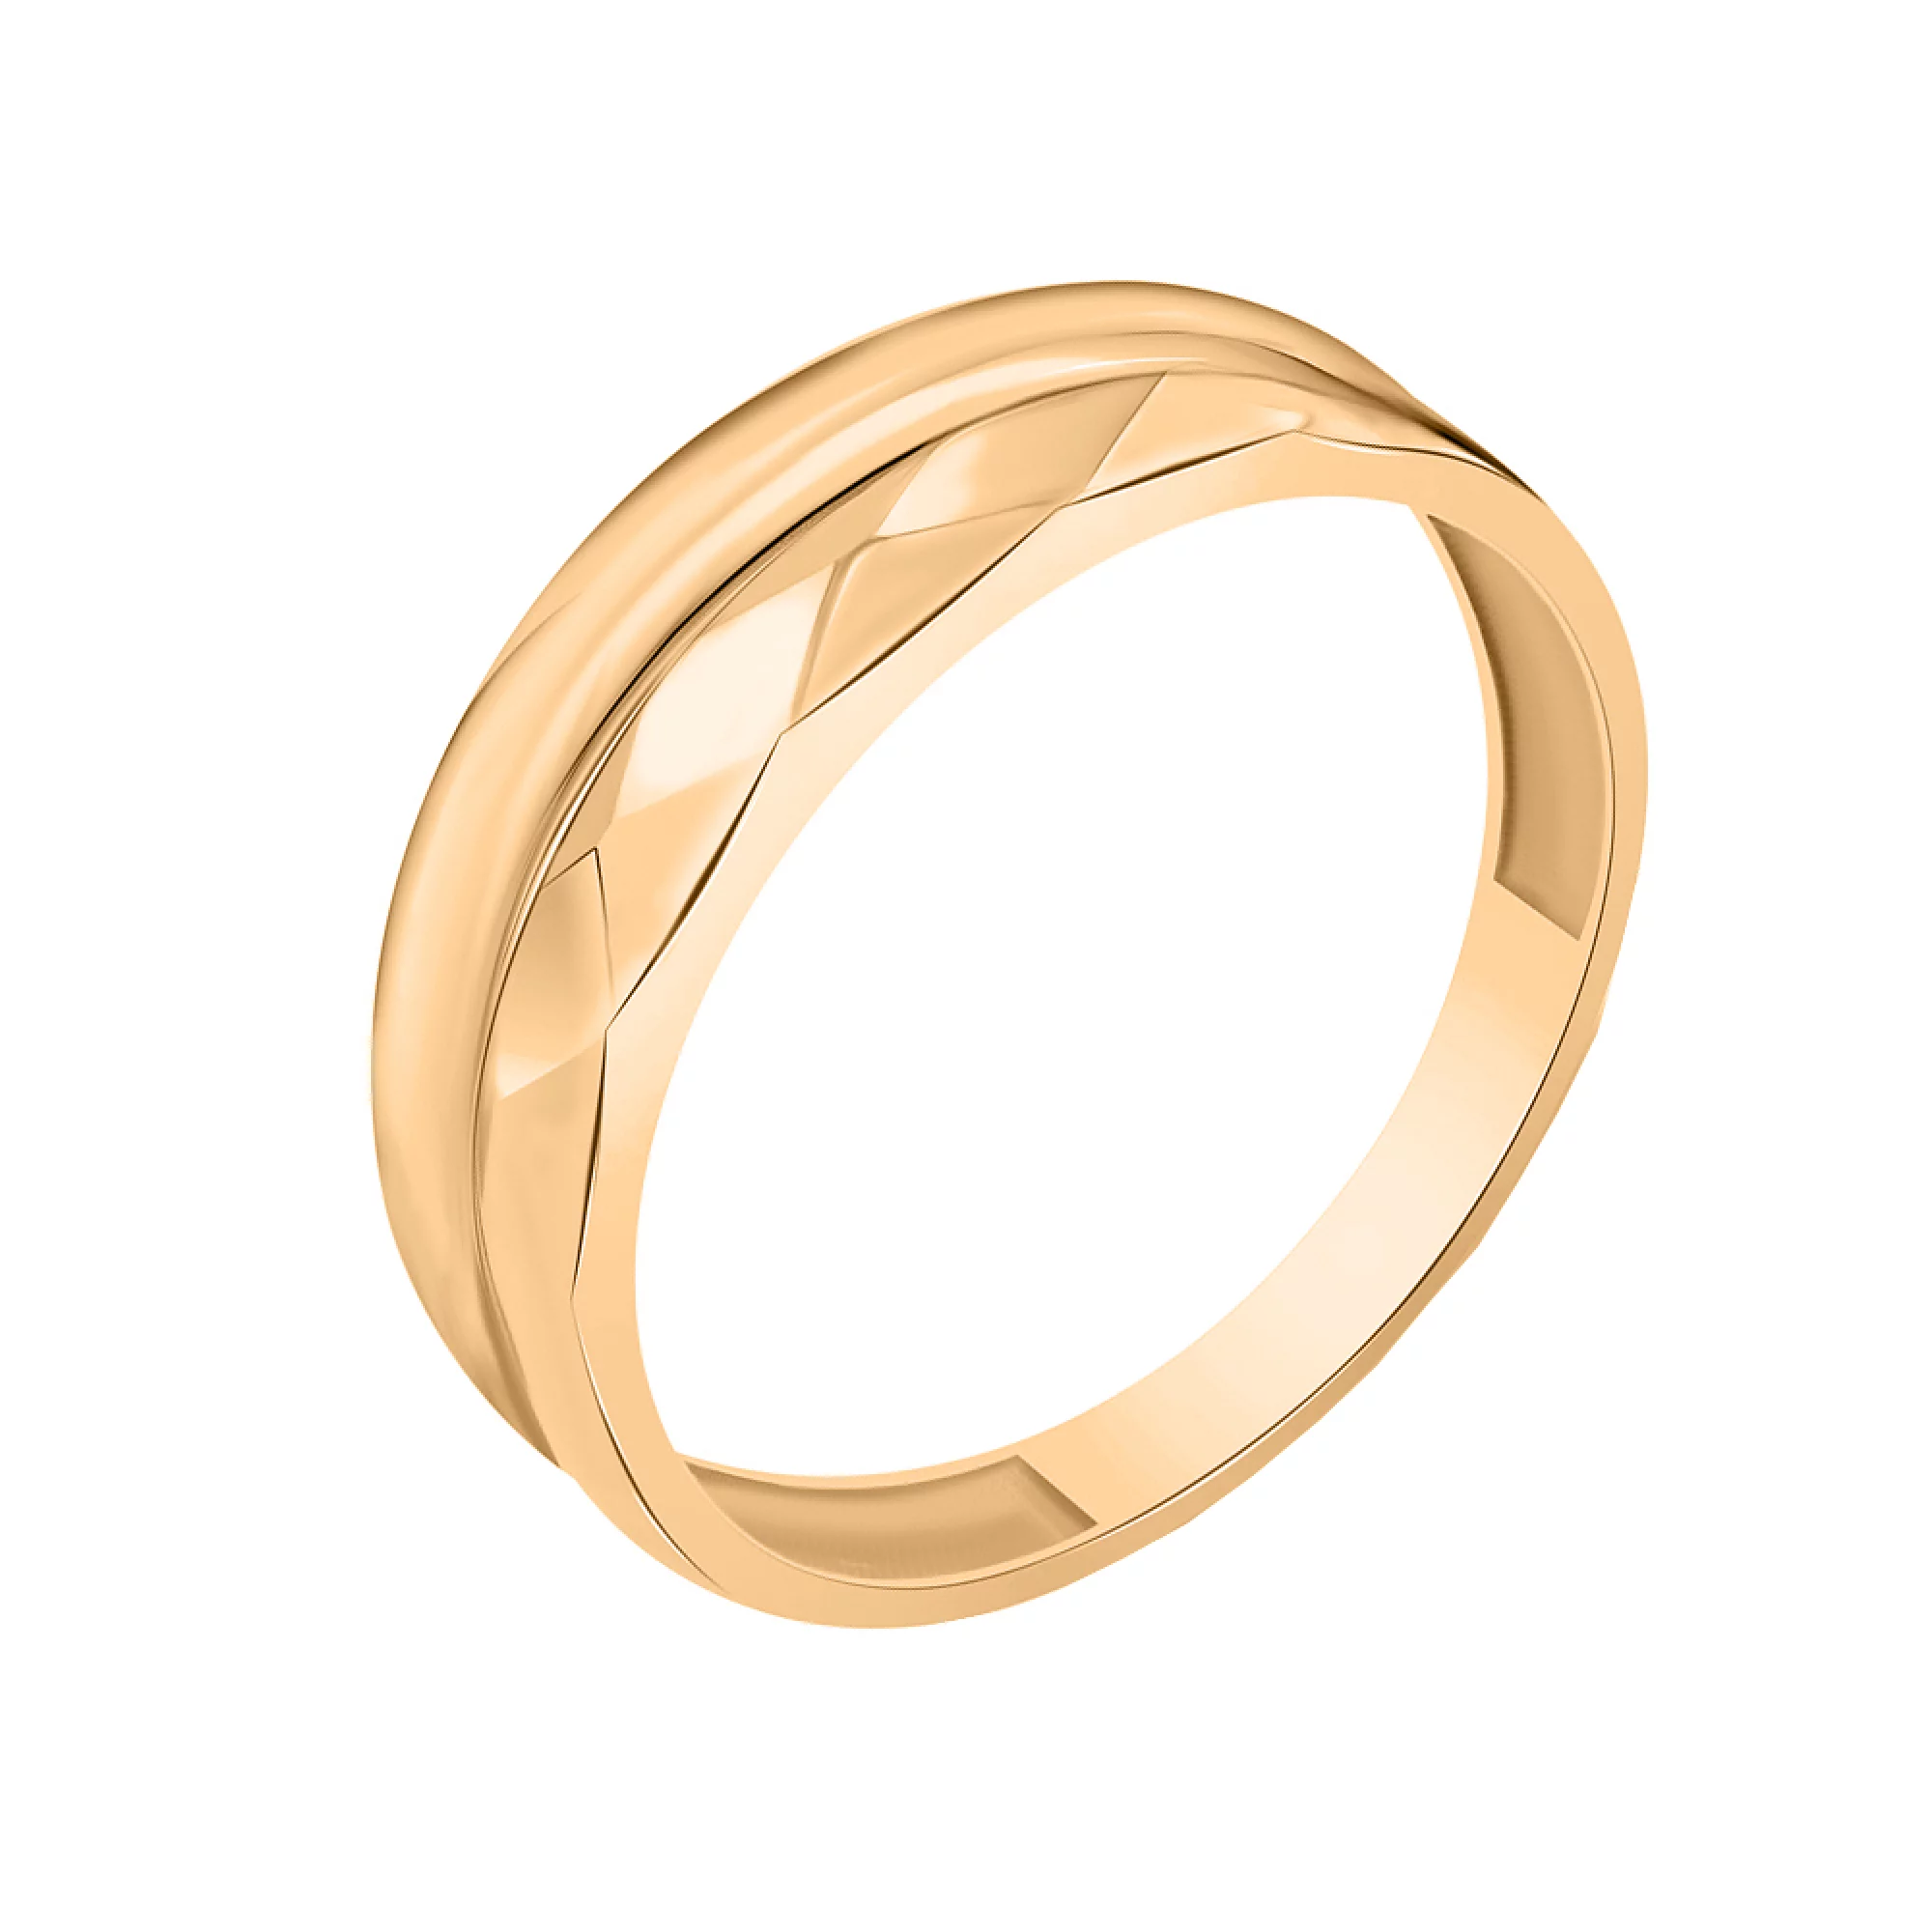 Двойное кольцо в красном золоте - 1618606 – изображение 1